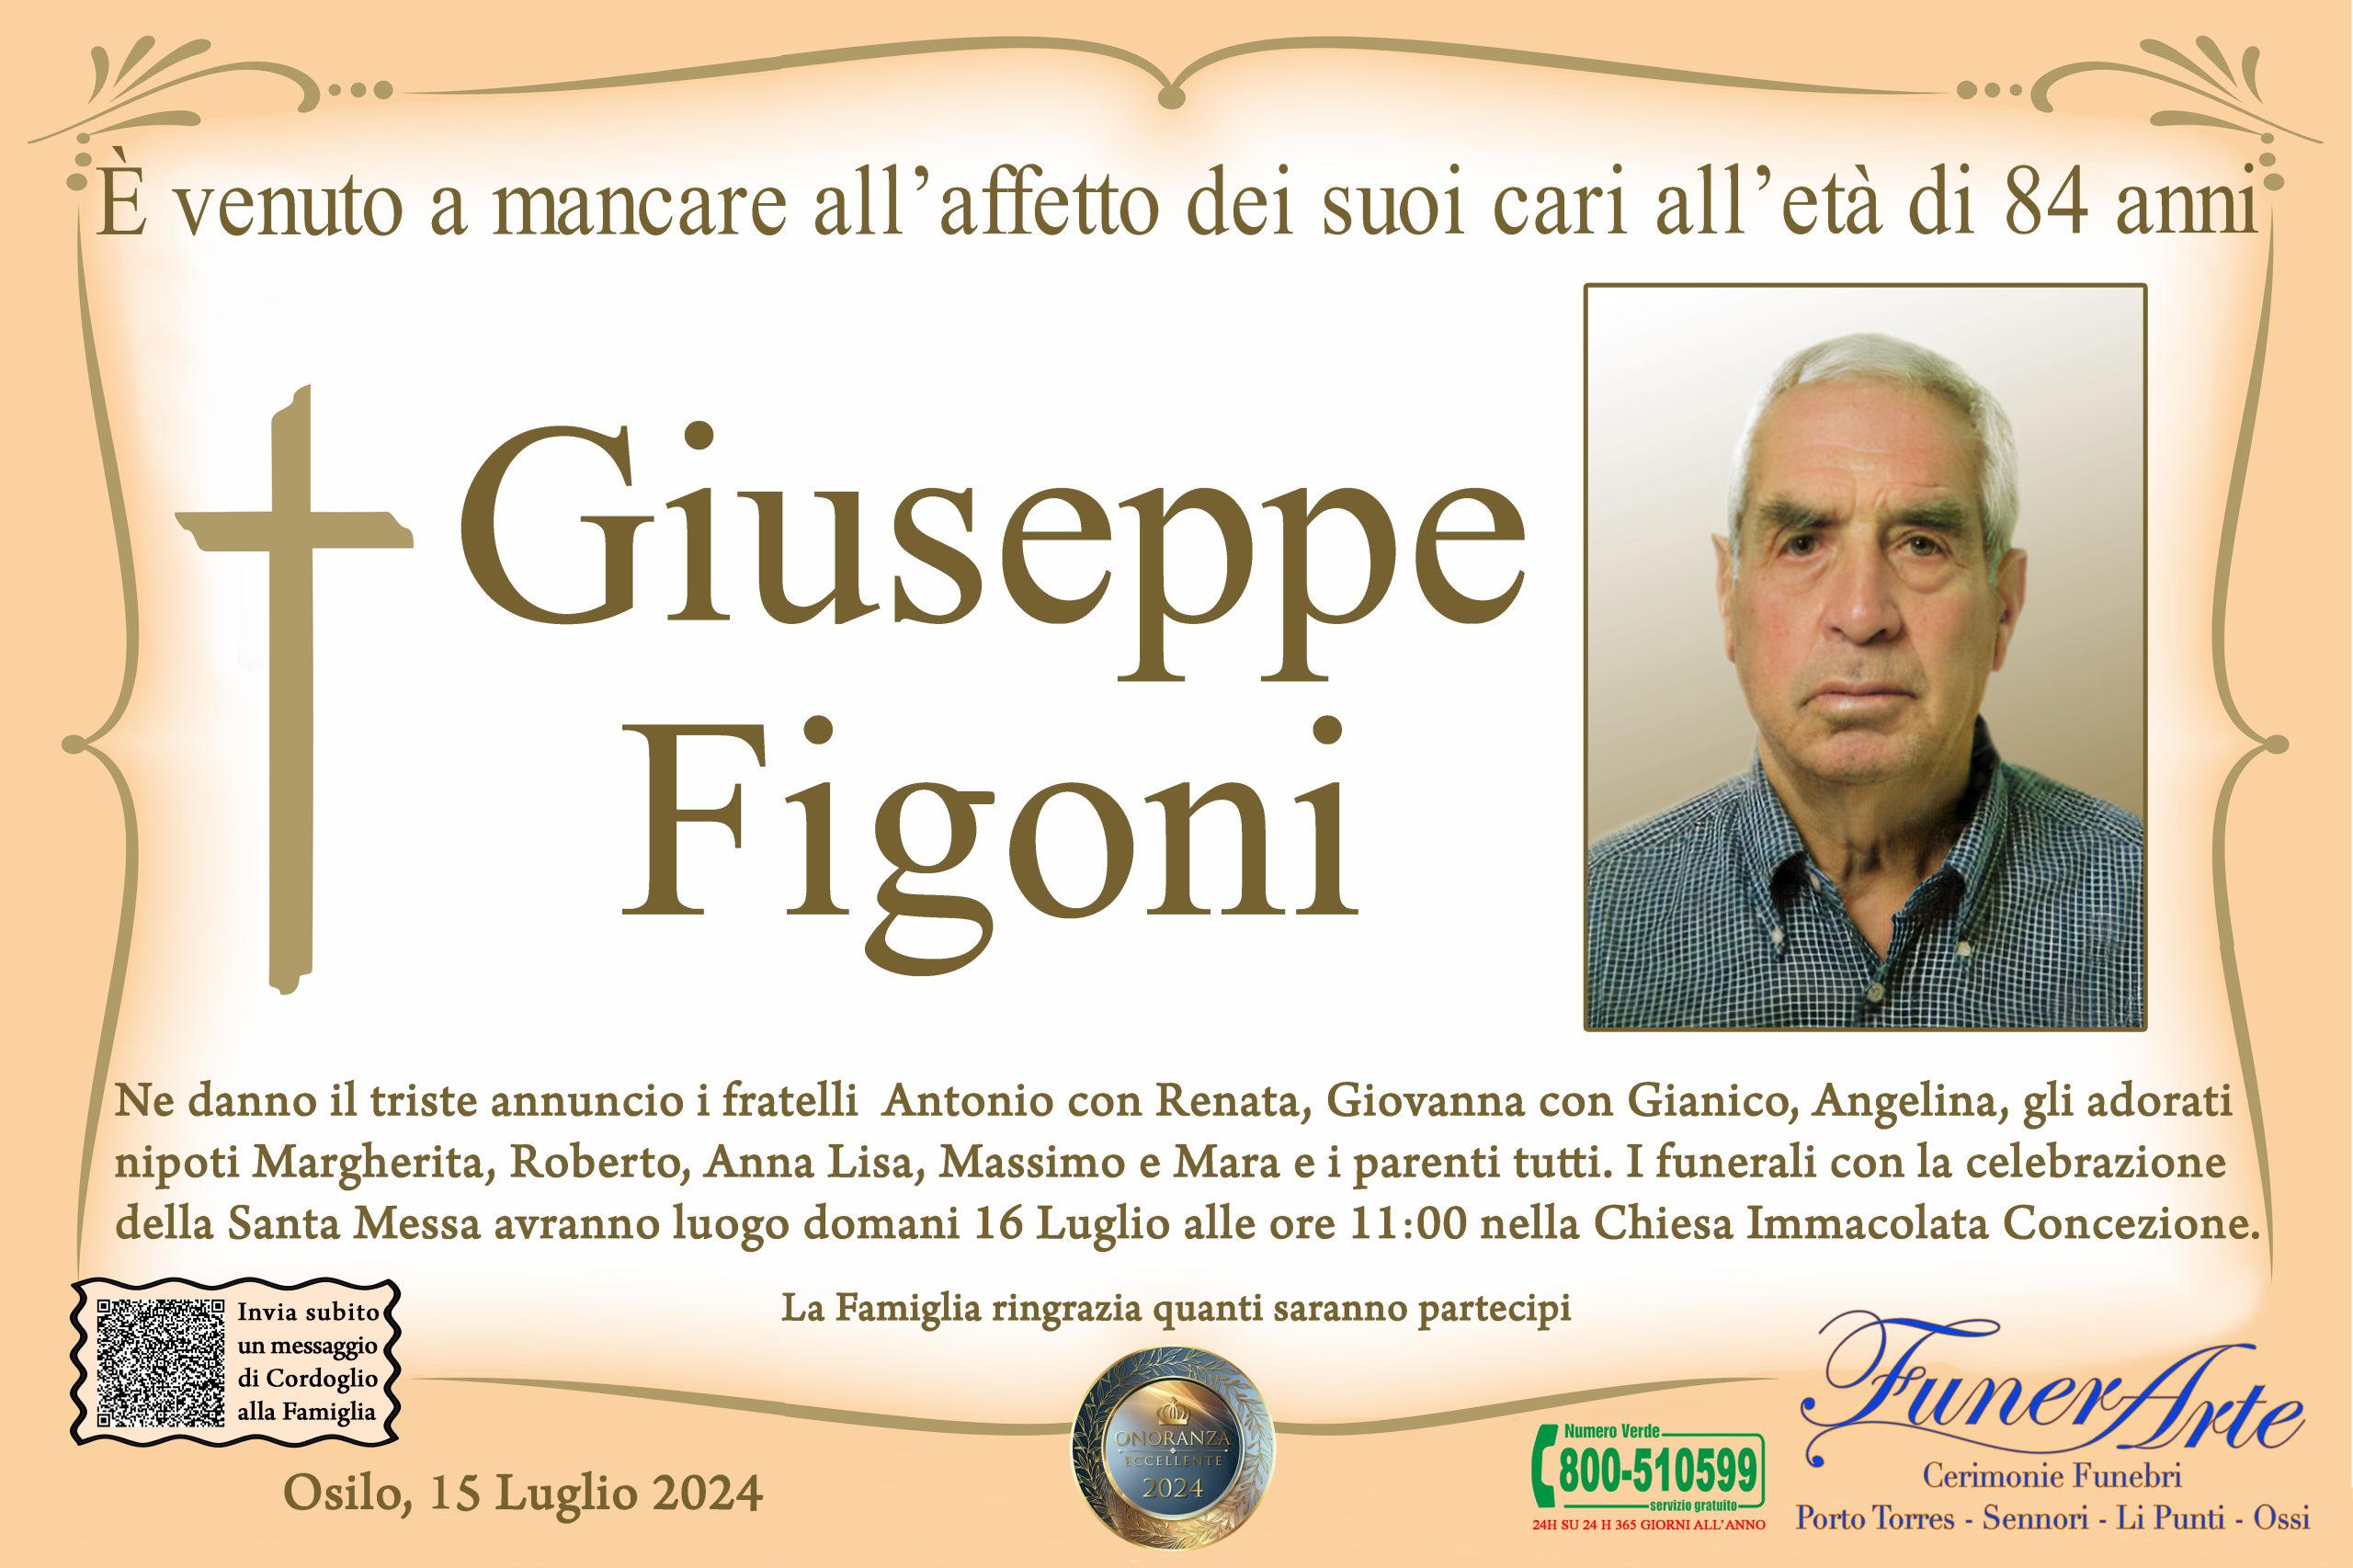 Giuseppe Figoni